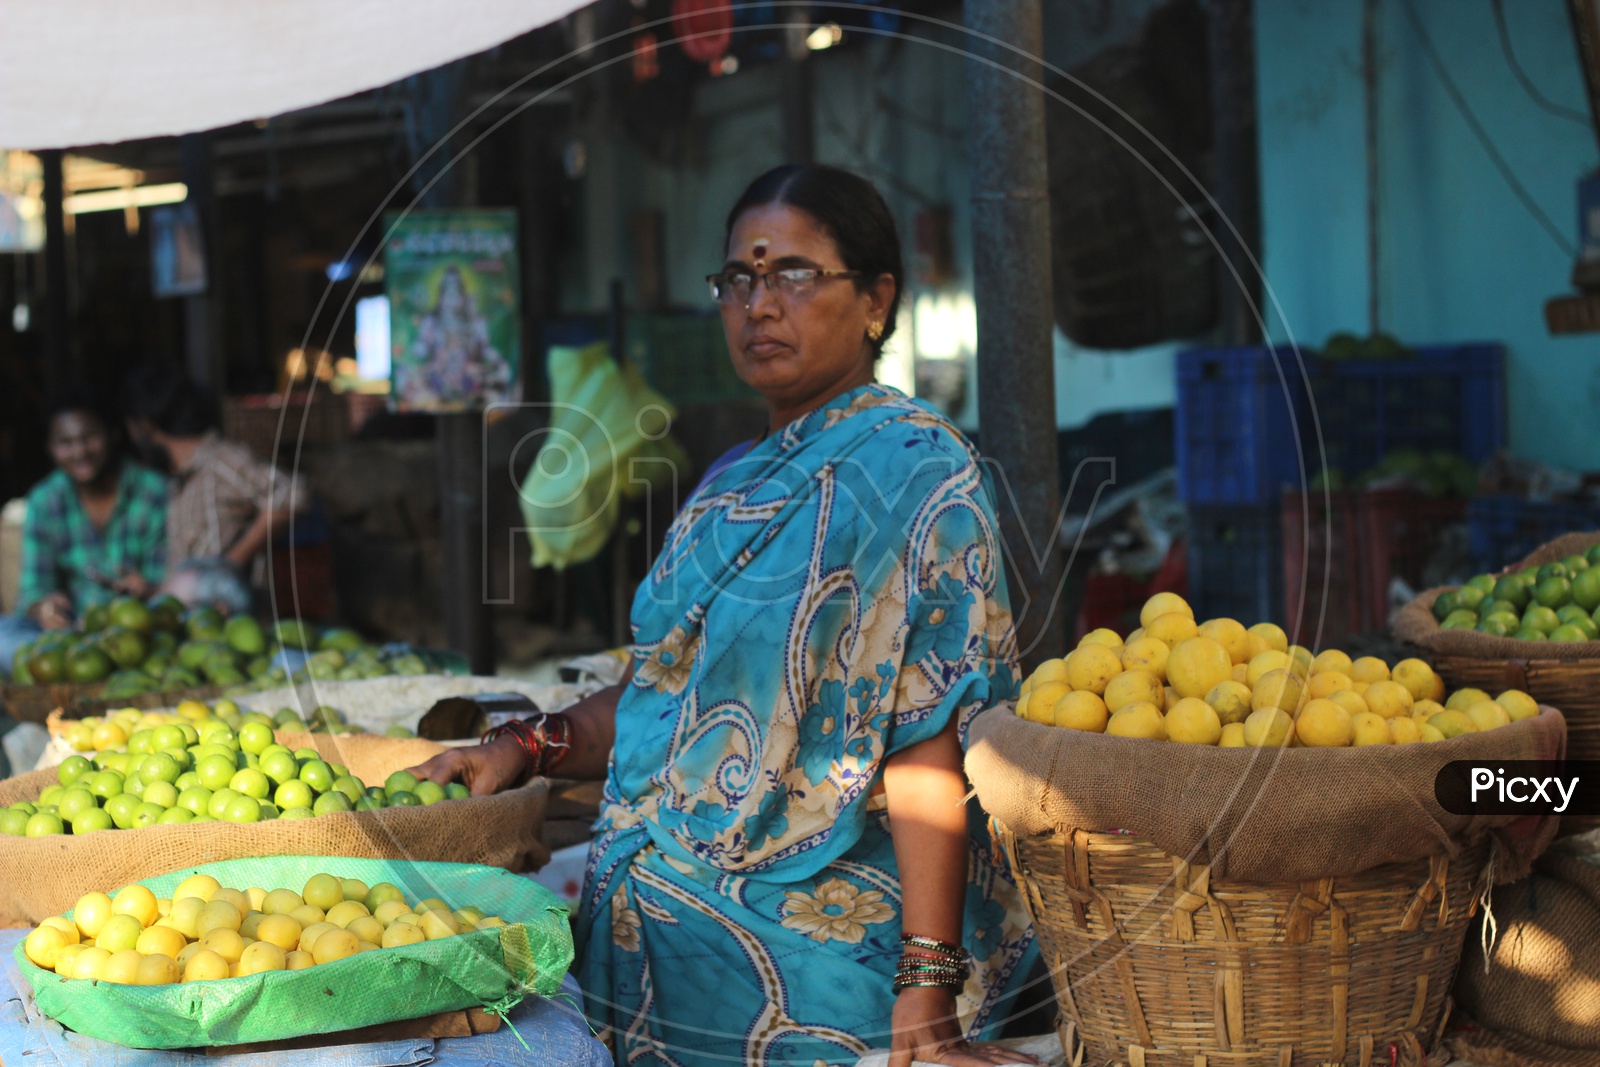 Woman Vegetable Seller at Vegetables Market